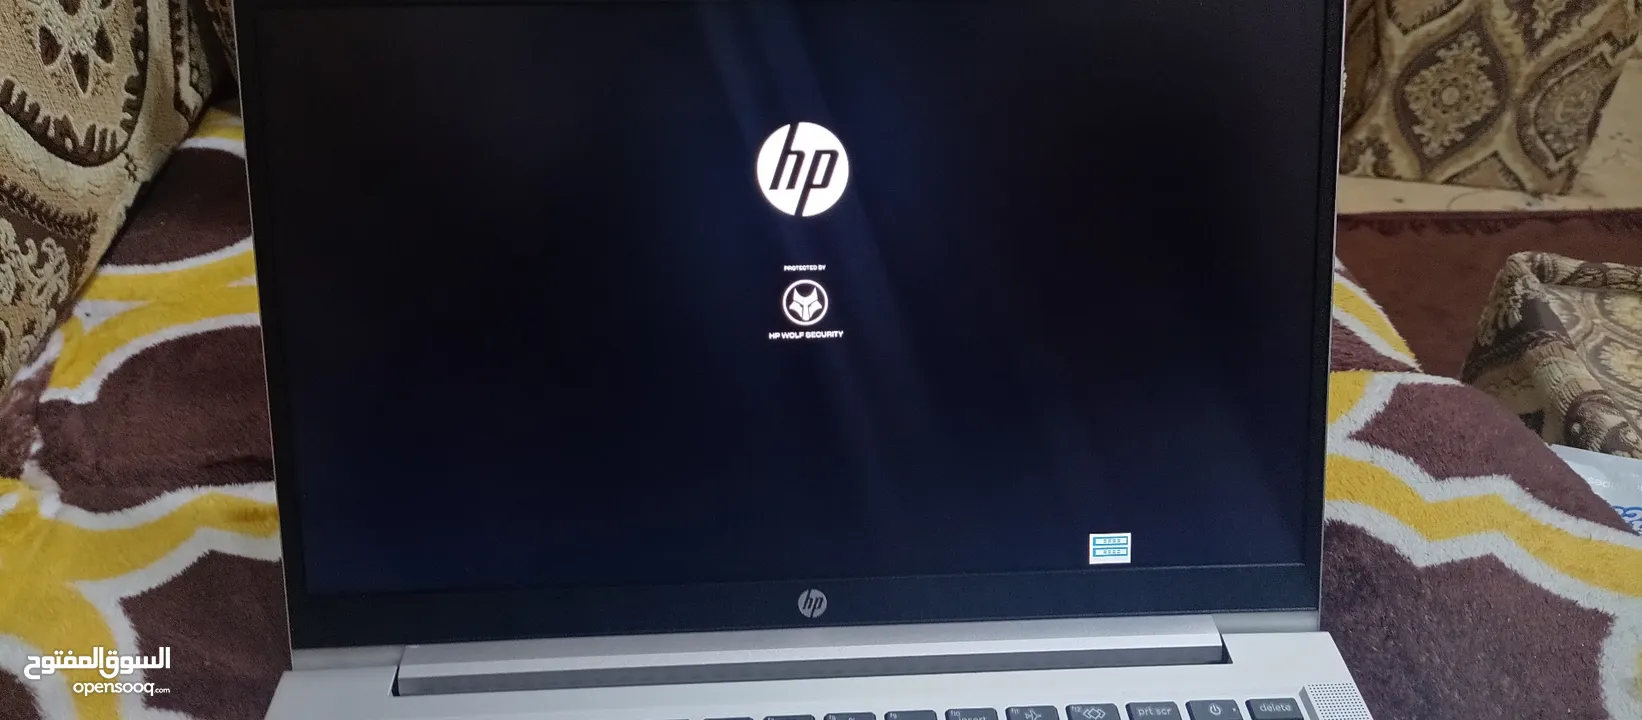 لابتوب hp قابل للمس/hp laptop touch screen